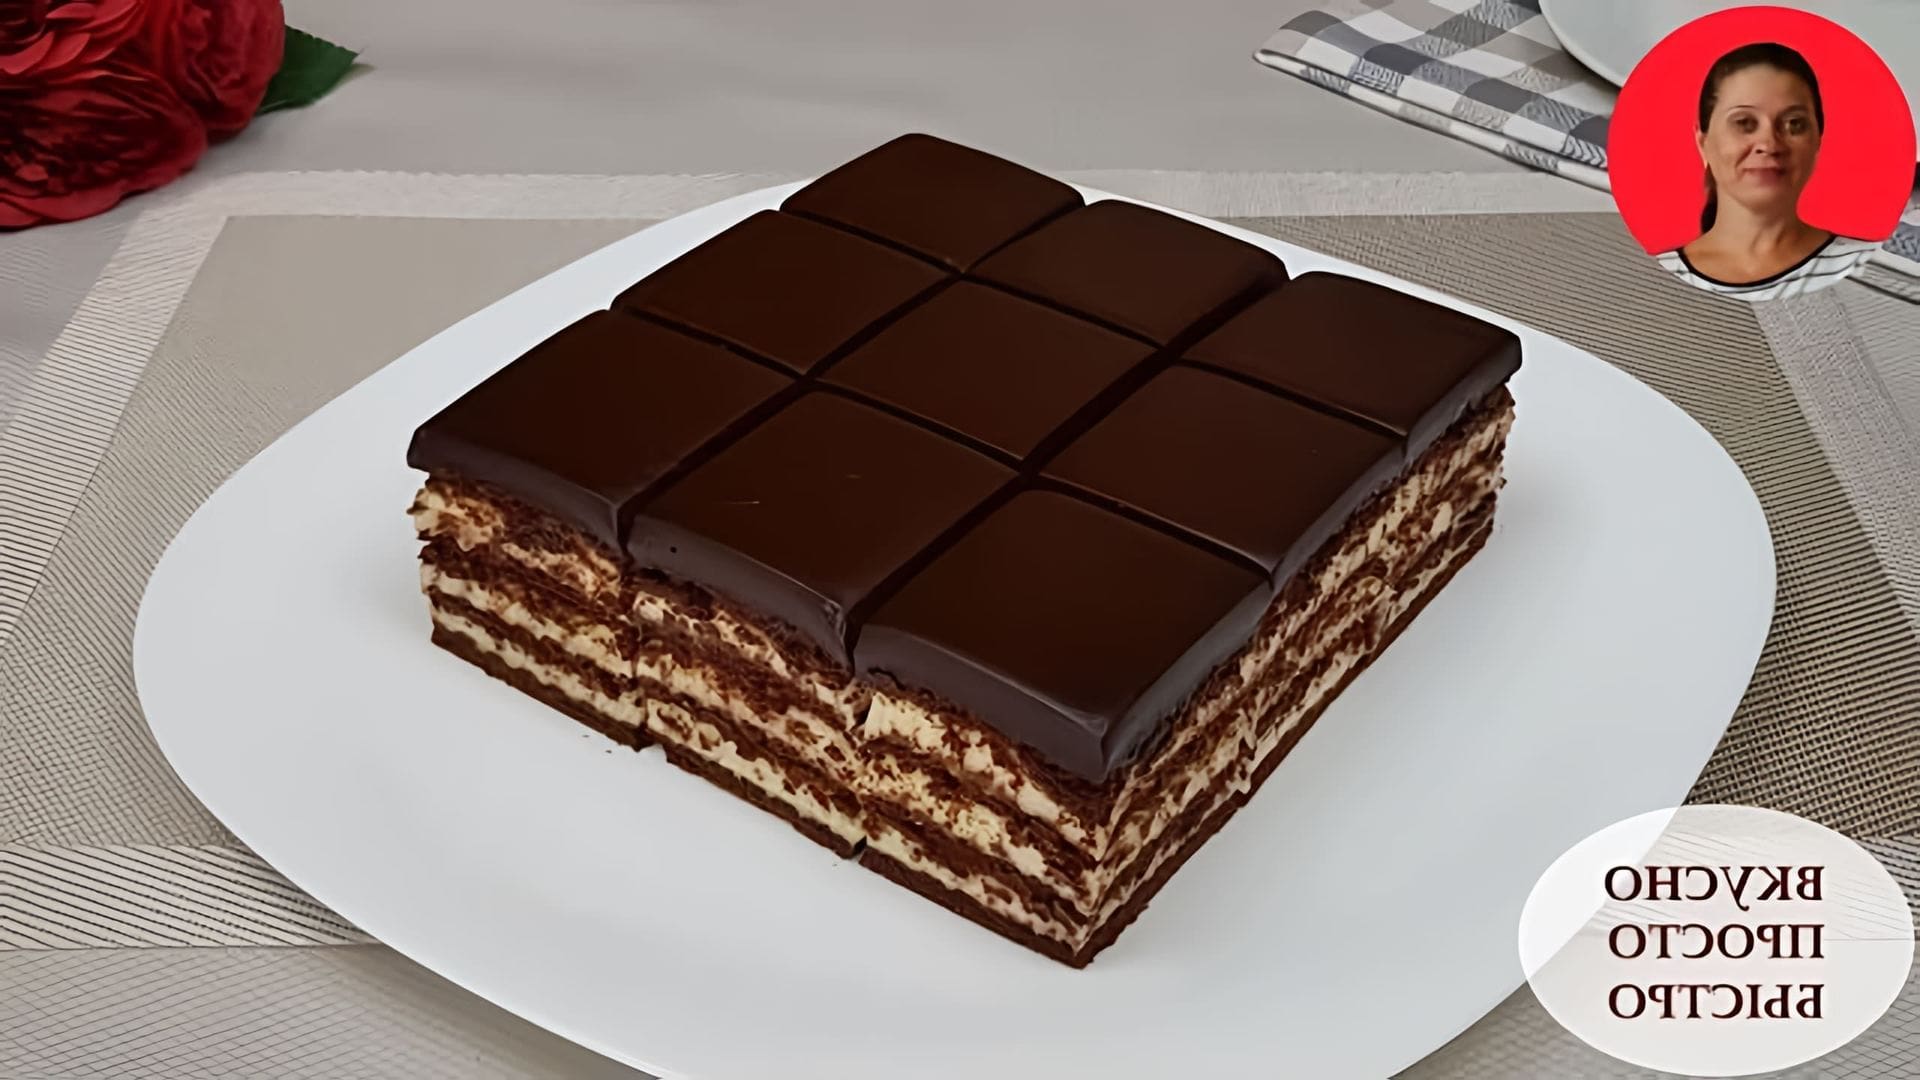 В этом видео Наталия показывает, как приготовить потрясающе вкусный шоколадный торт из печенья без использования духовки и миксера